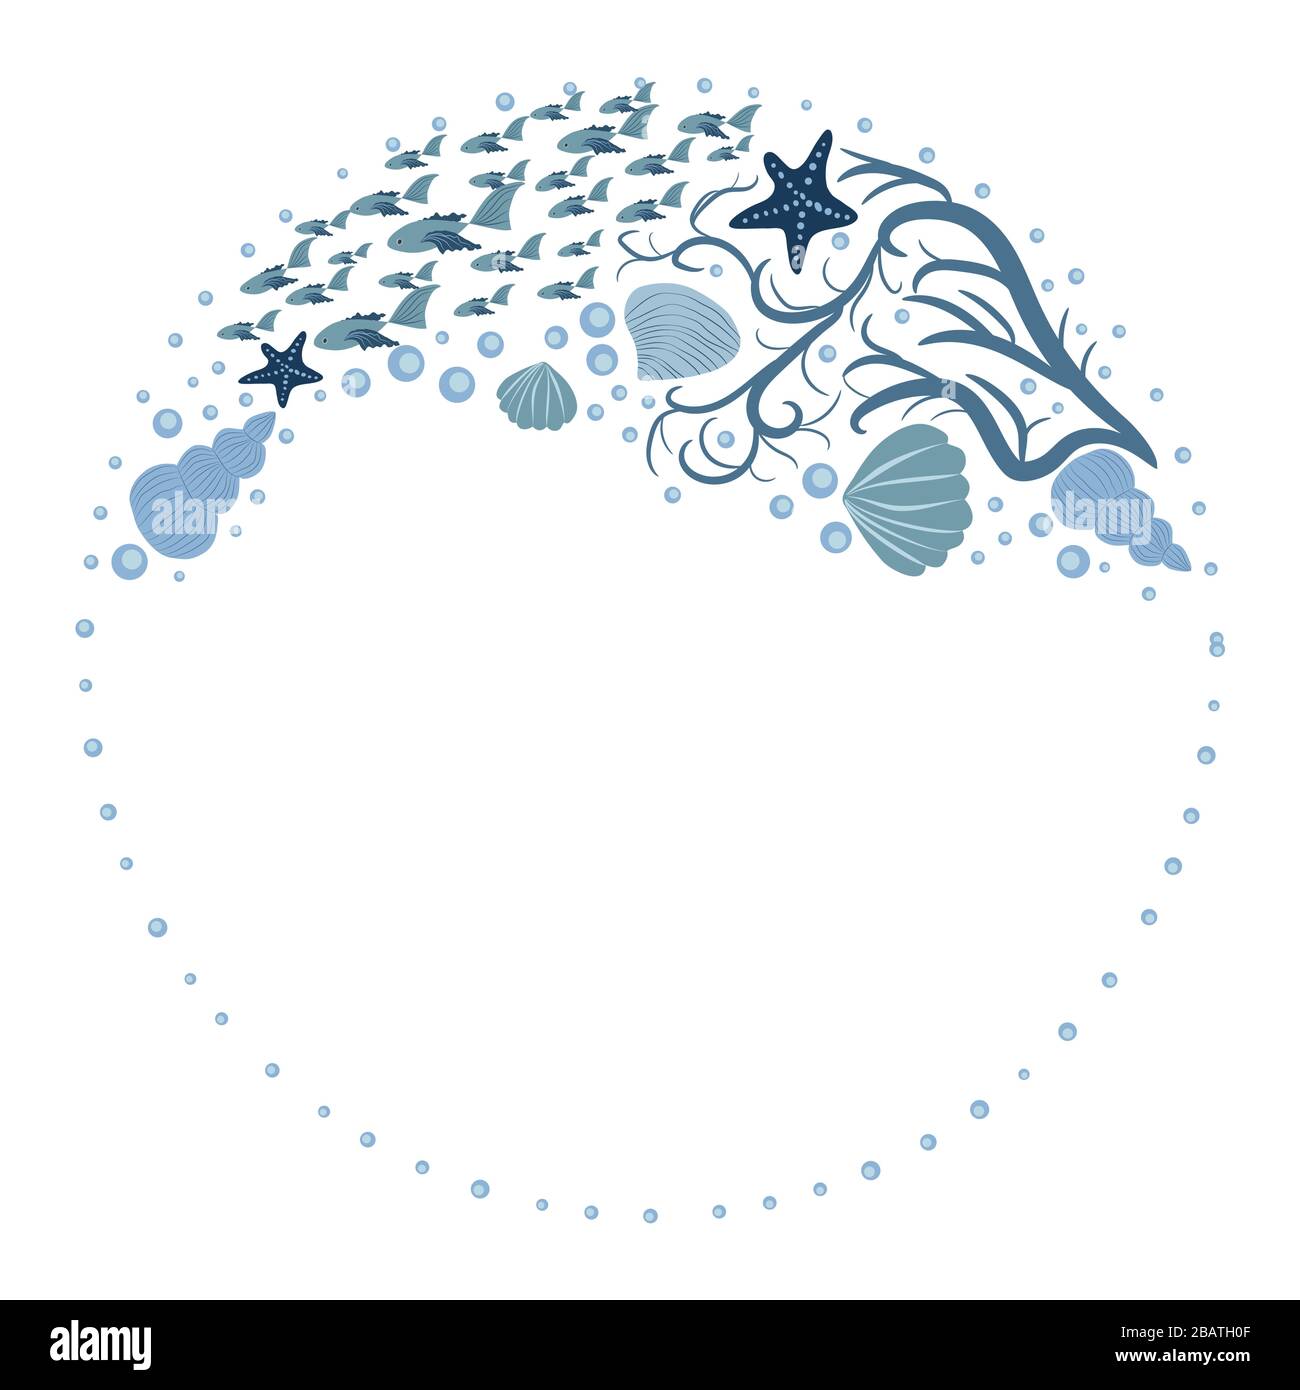 Cornice sul tema marino con bordo di creature marine disegnate a mano  Immagine e Vettoriale - Alamy